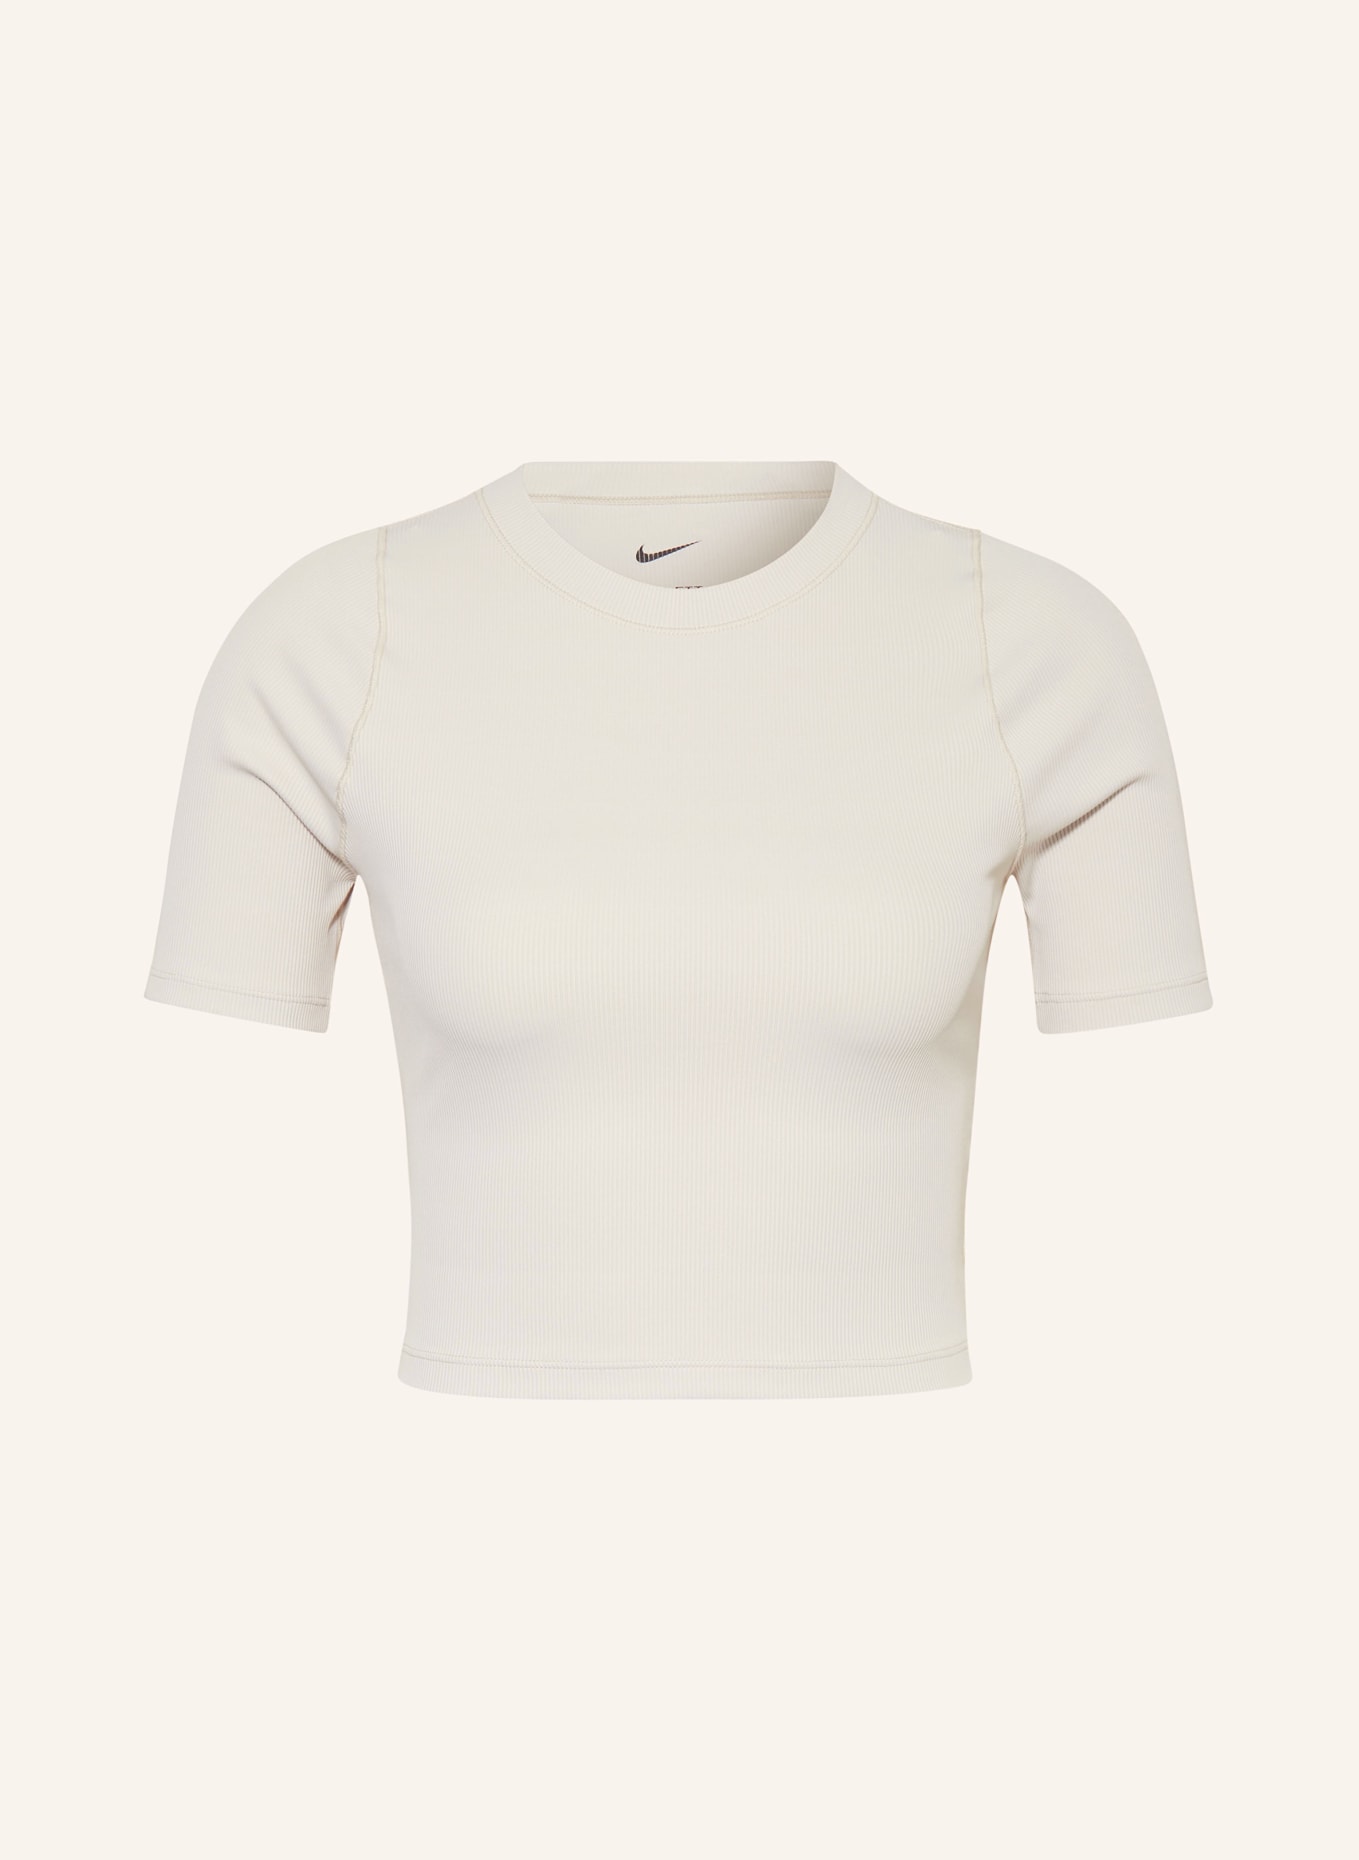 Nike Cropped shirt INFINASOFT ESSENTIALS, Color: CREAM (Image 1)